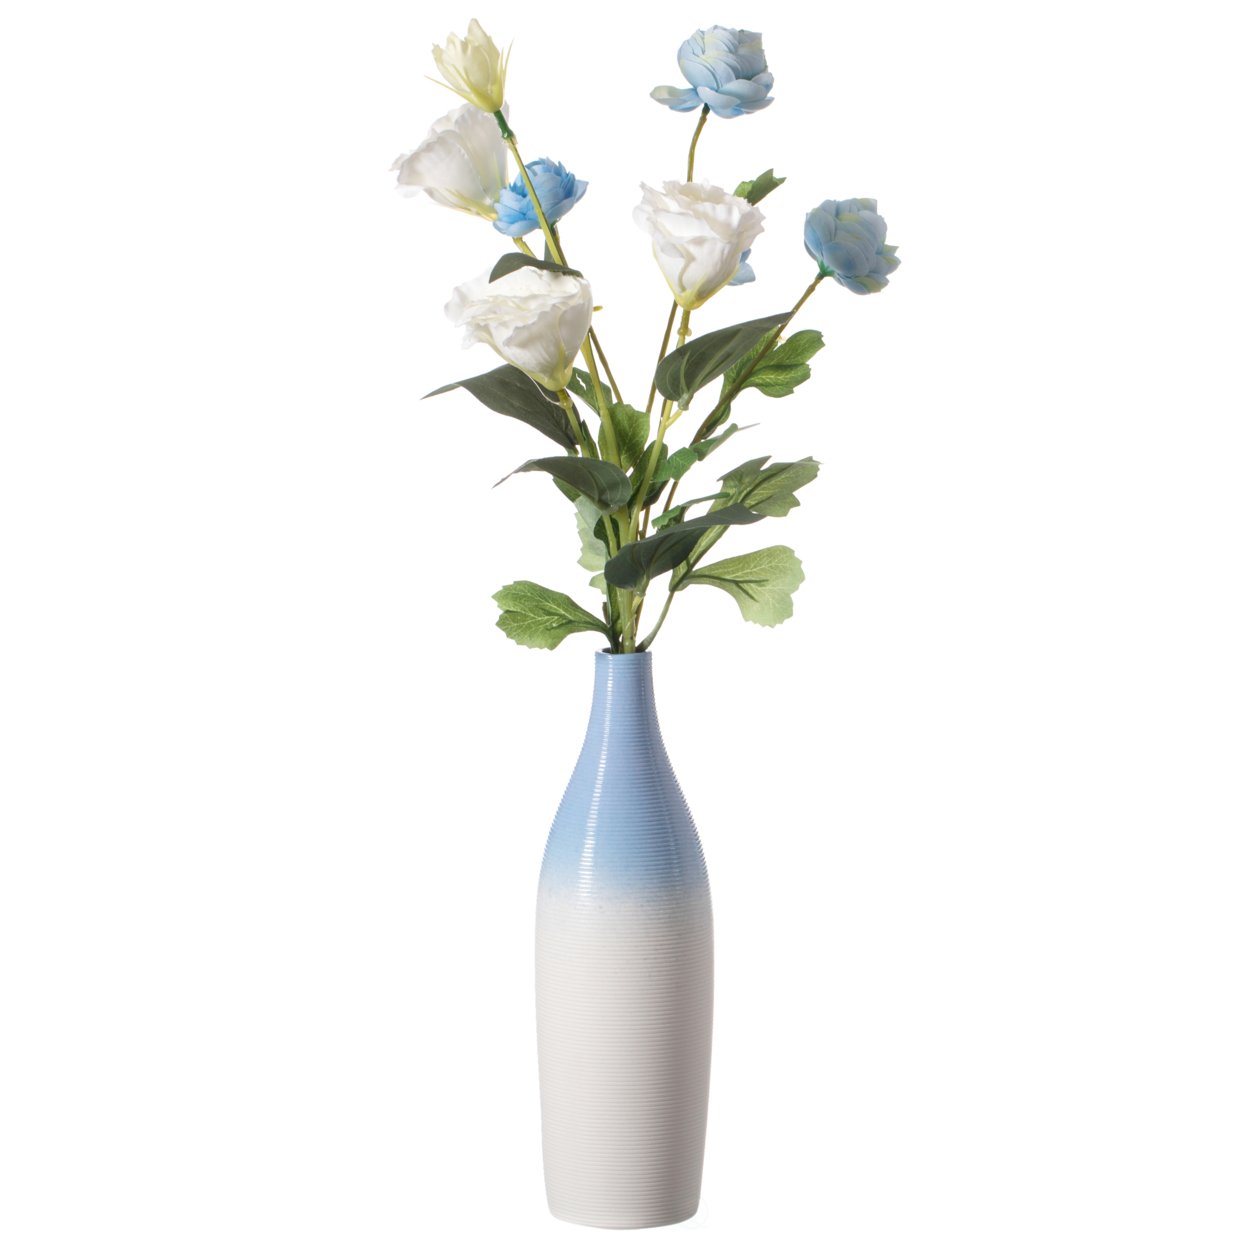 Modern Decorative Ceramic Table Vase Ripped Design Bottle Shape Flower Holder - Black